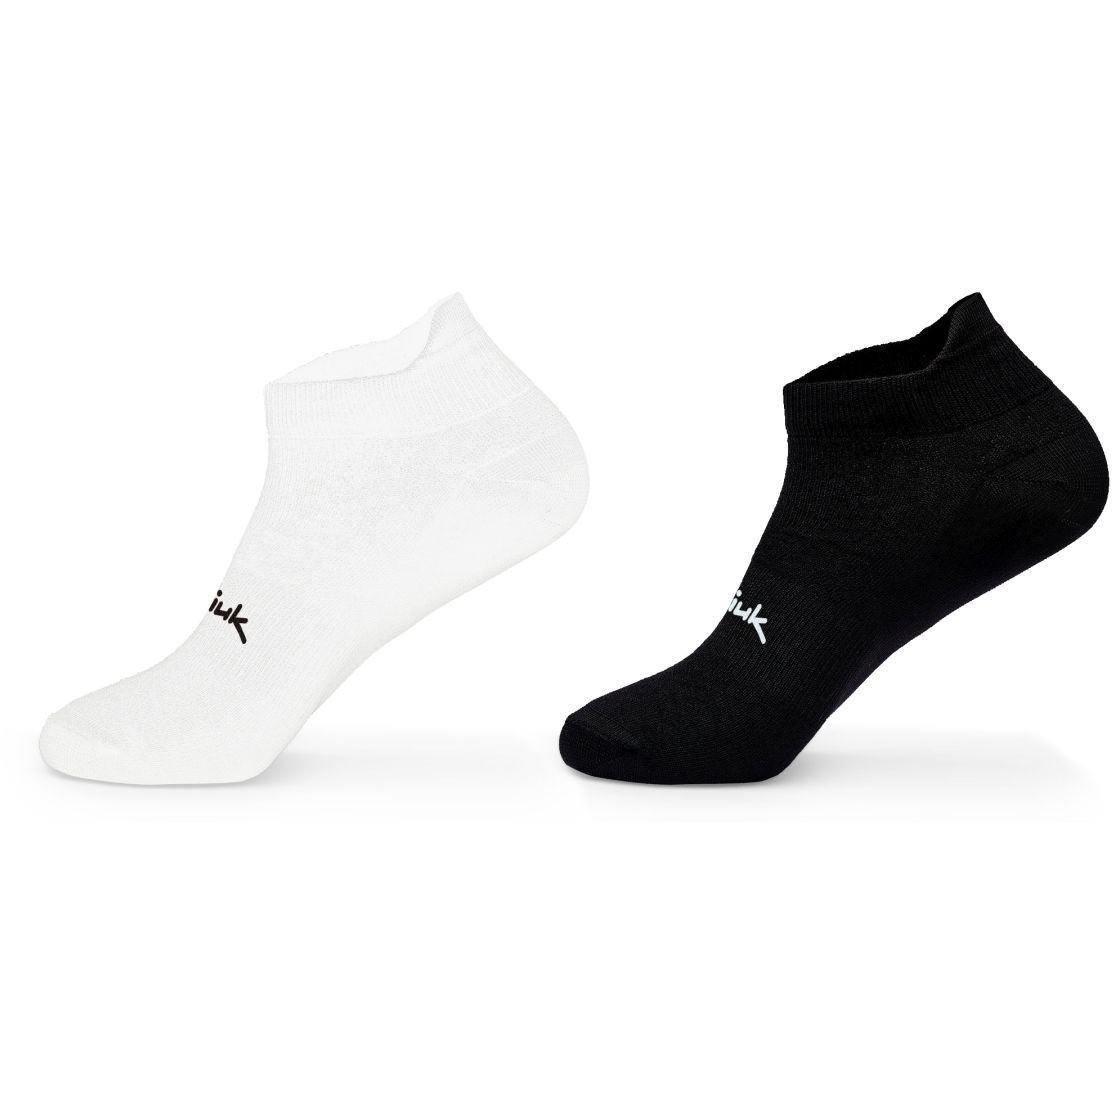 Produktbild von Spiuk ANATOMIC Micro Socken (2 Paar) - weiß/schwarz